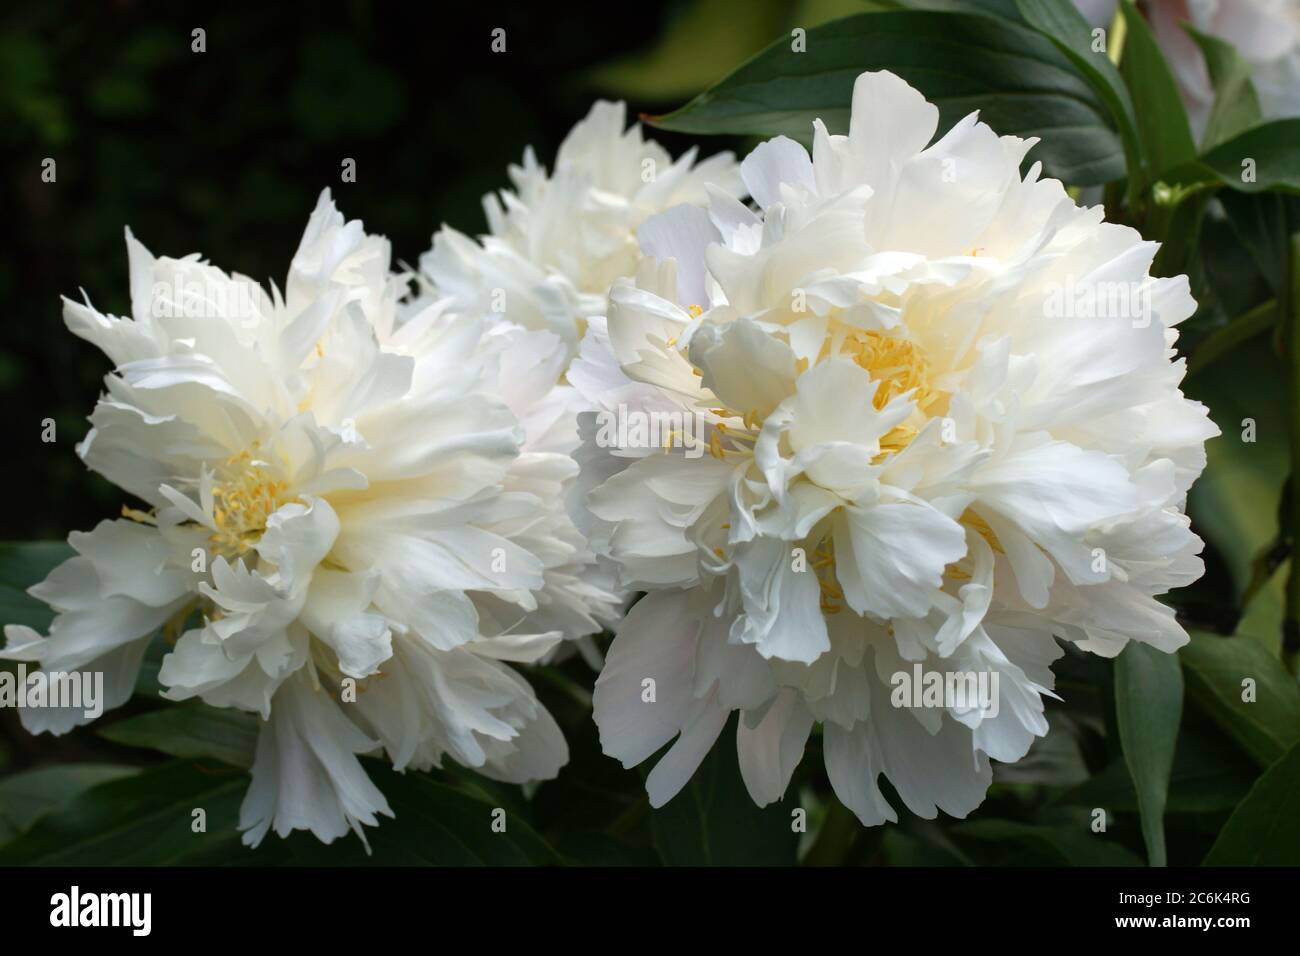 Im Garten wachsen wunderschöne weiße Doppelpeonies. Zwei Blumen. Stockfoto